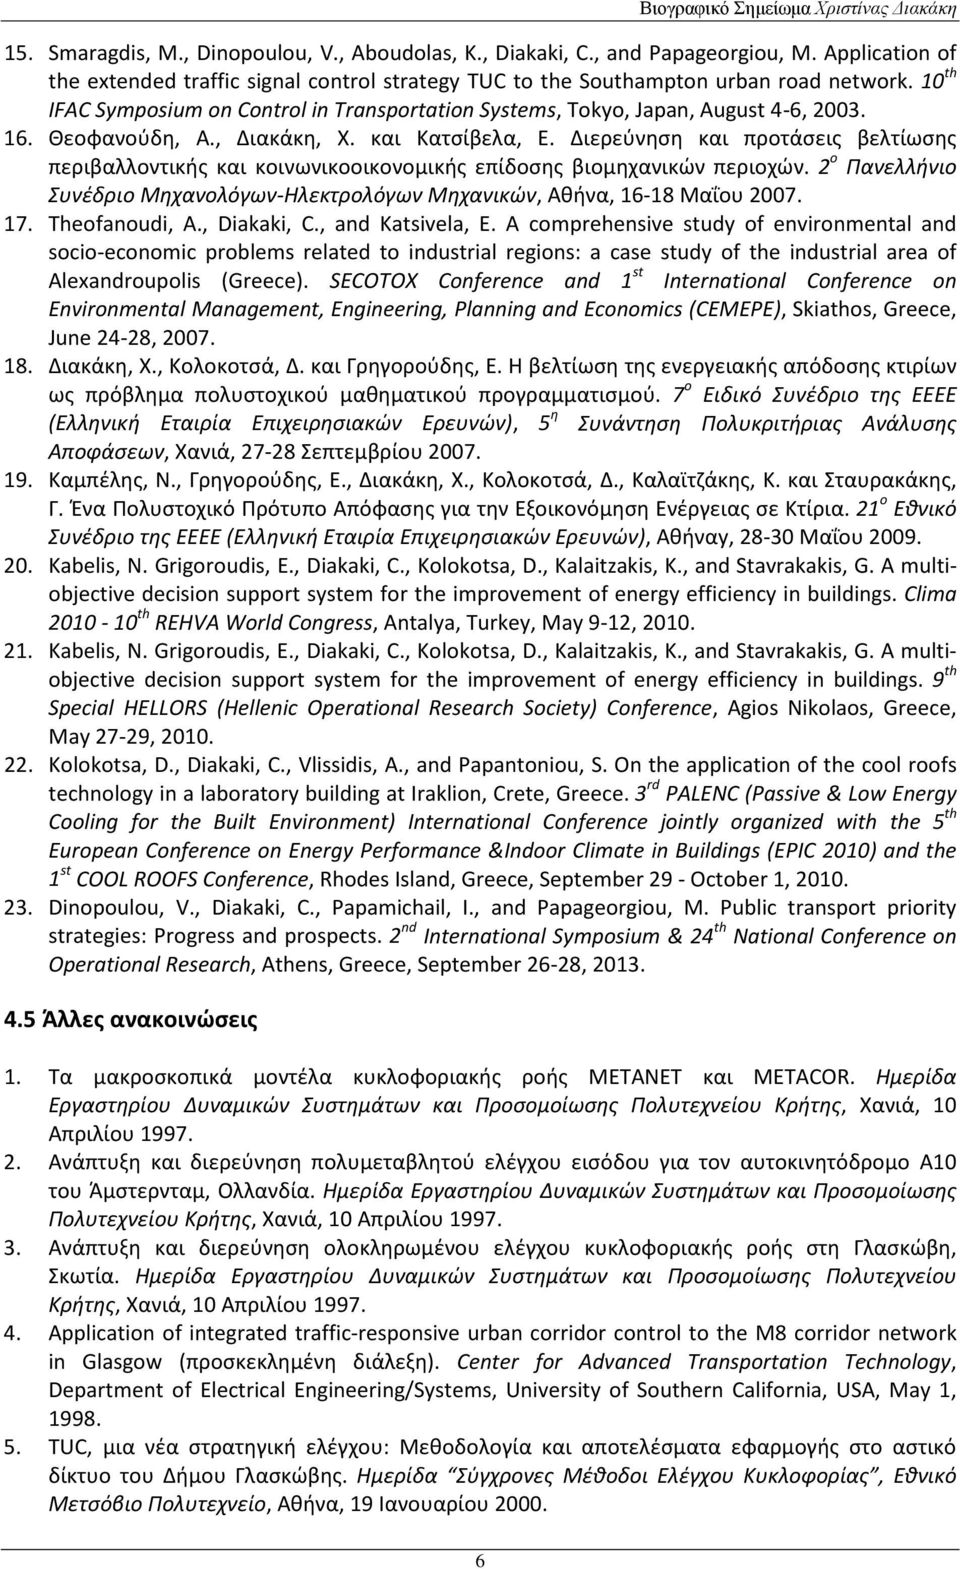 Διερεύνηση και προτάσεις βελτίωσης περιβαλλοντικής και κοινωνικοοικονομικής επίδοσης βιομηχανικών περιοχών. 2 ο Πανελλήνιο Συνέδριο Μηχανολόγων-Ηλεκτρολόγων Μηχανικών, Αθήνα, 16-18 Μαΐου 2007. 17.